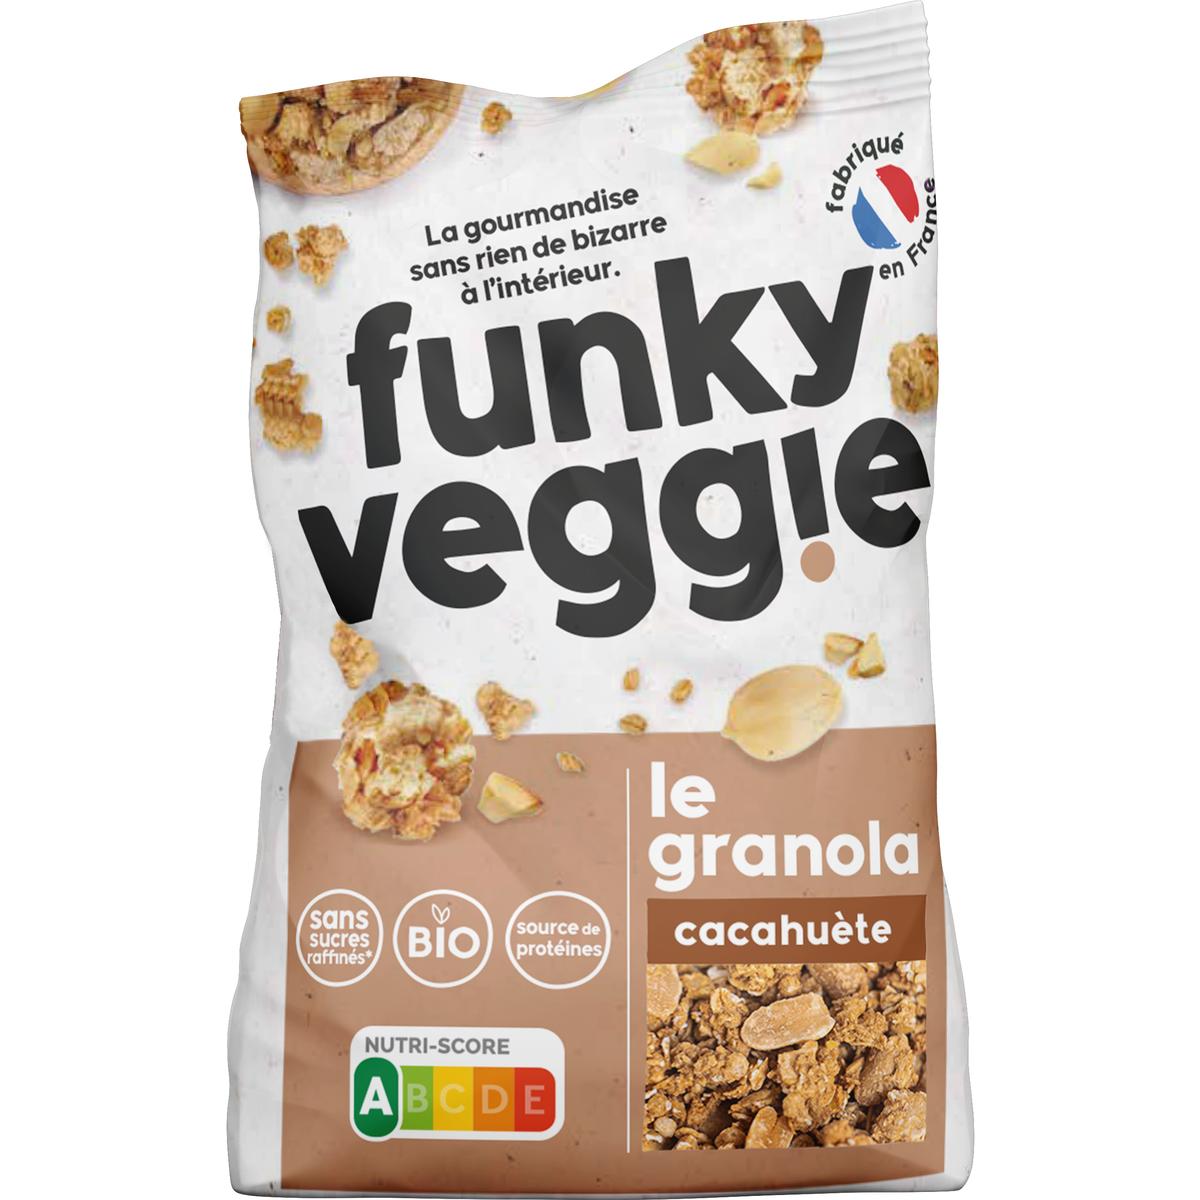 Céréales fourrées Beurre de cacahuètes - Funky Veggie